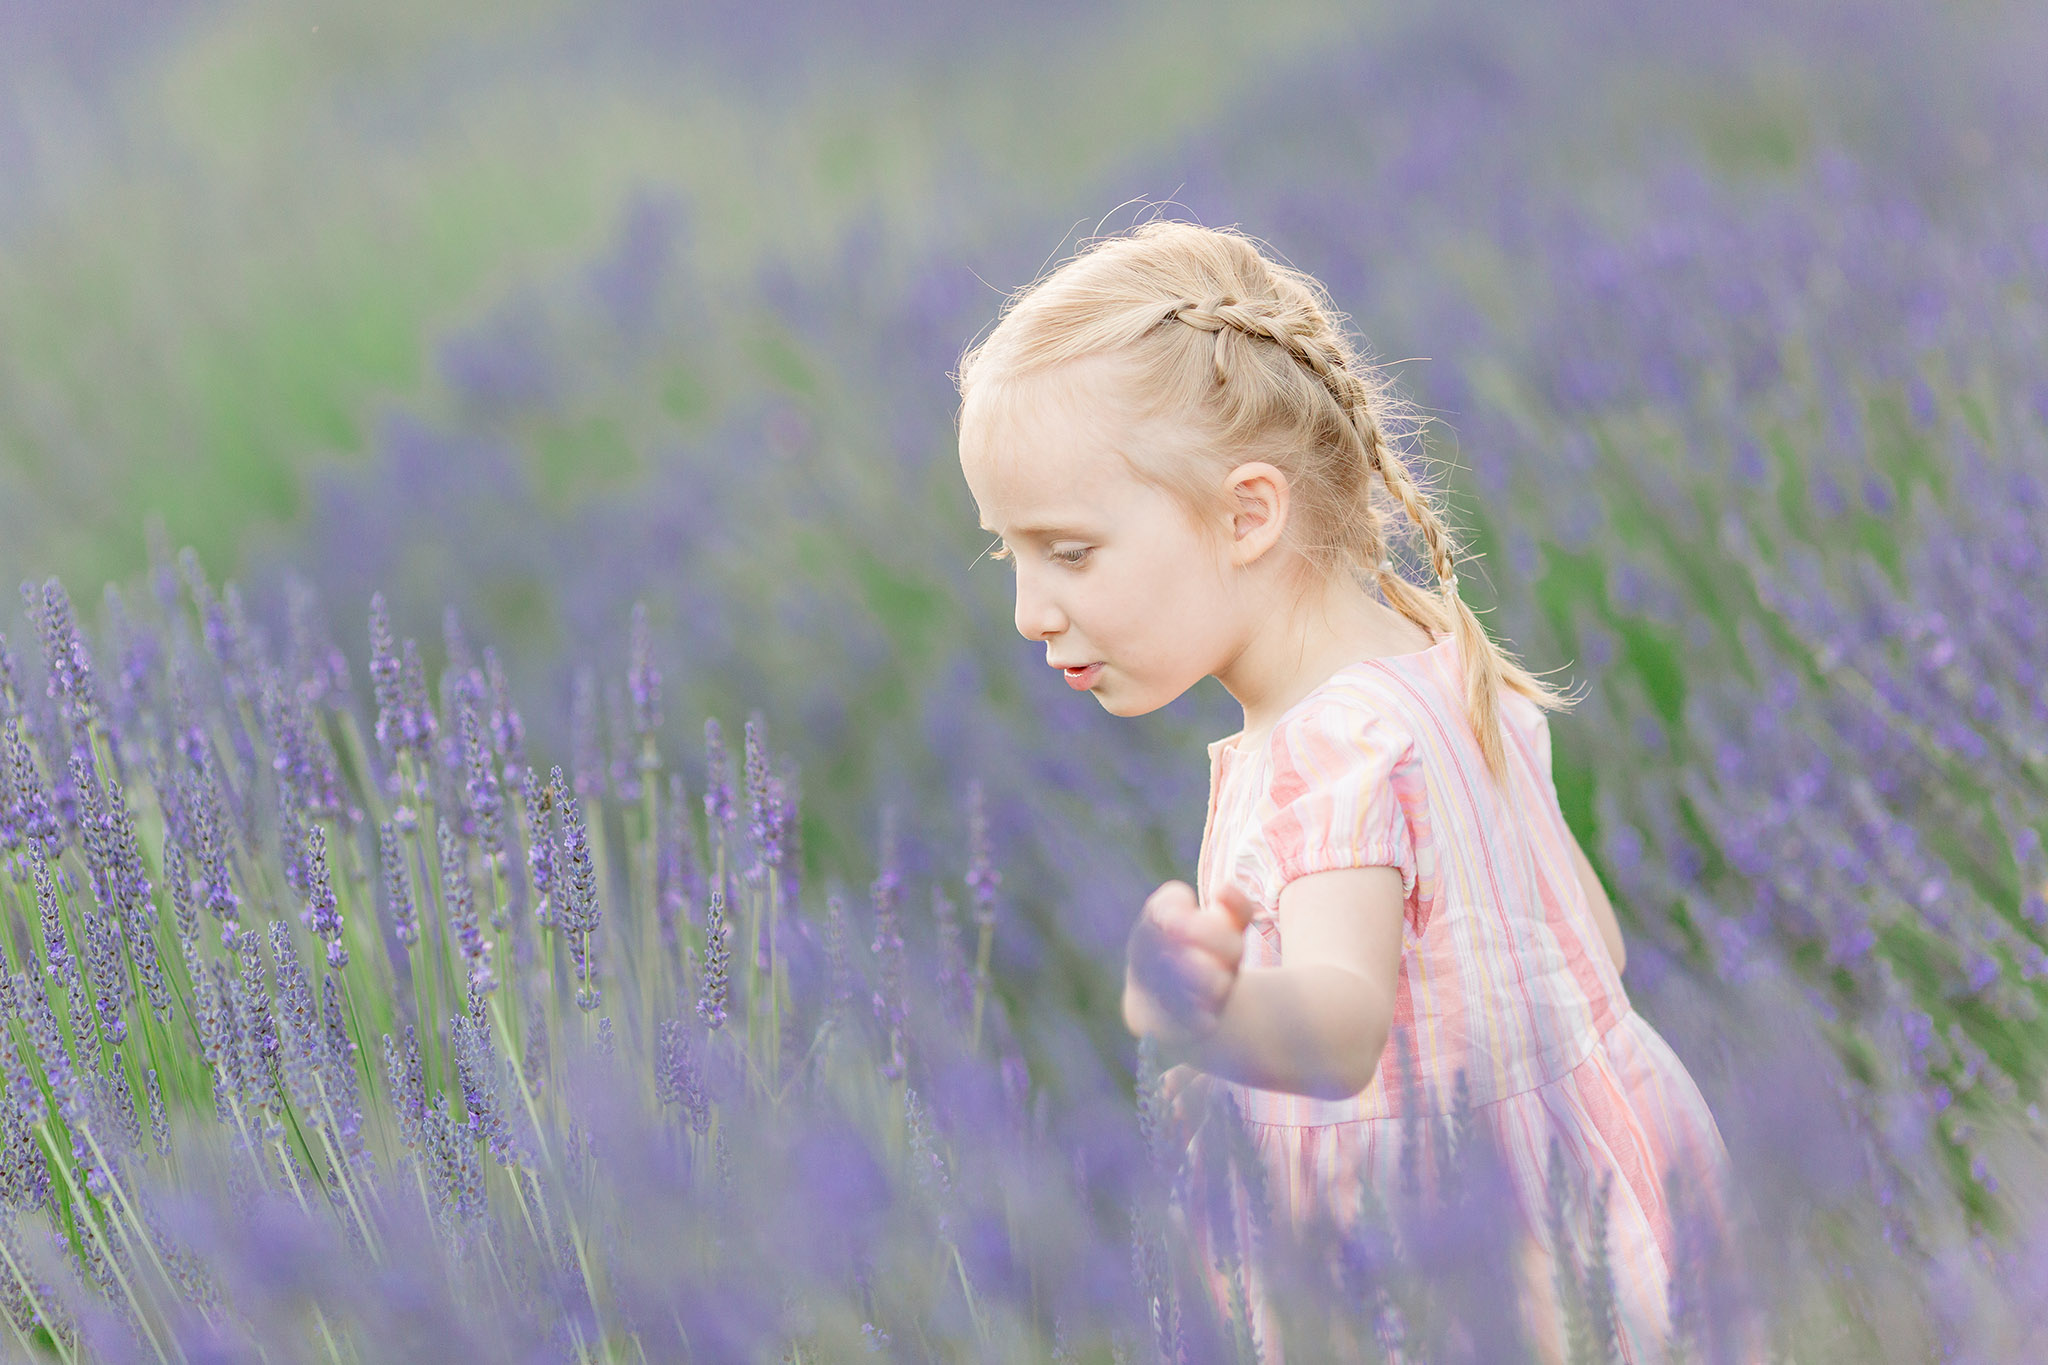 Girl in lavender field - Milestone photographer in Portland